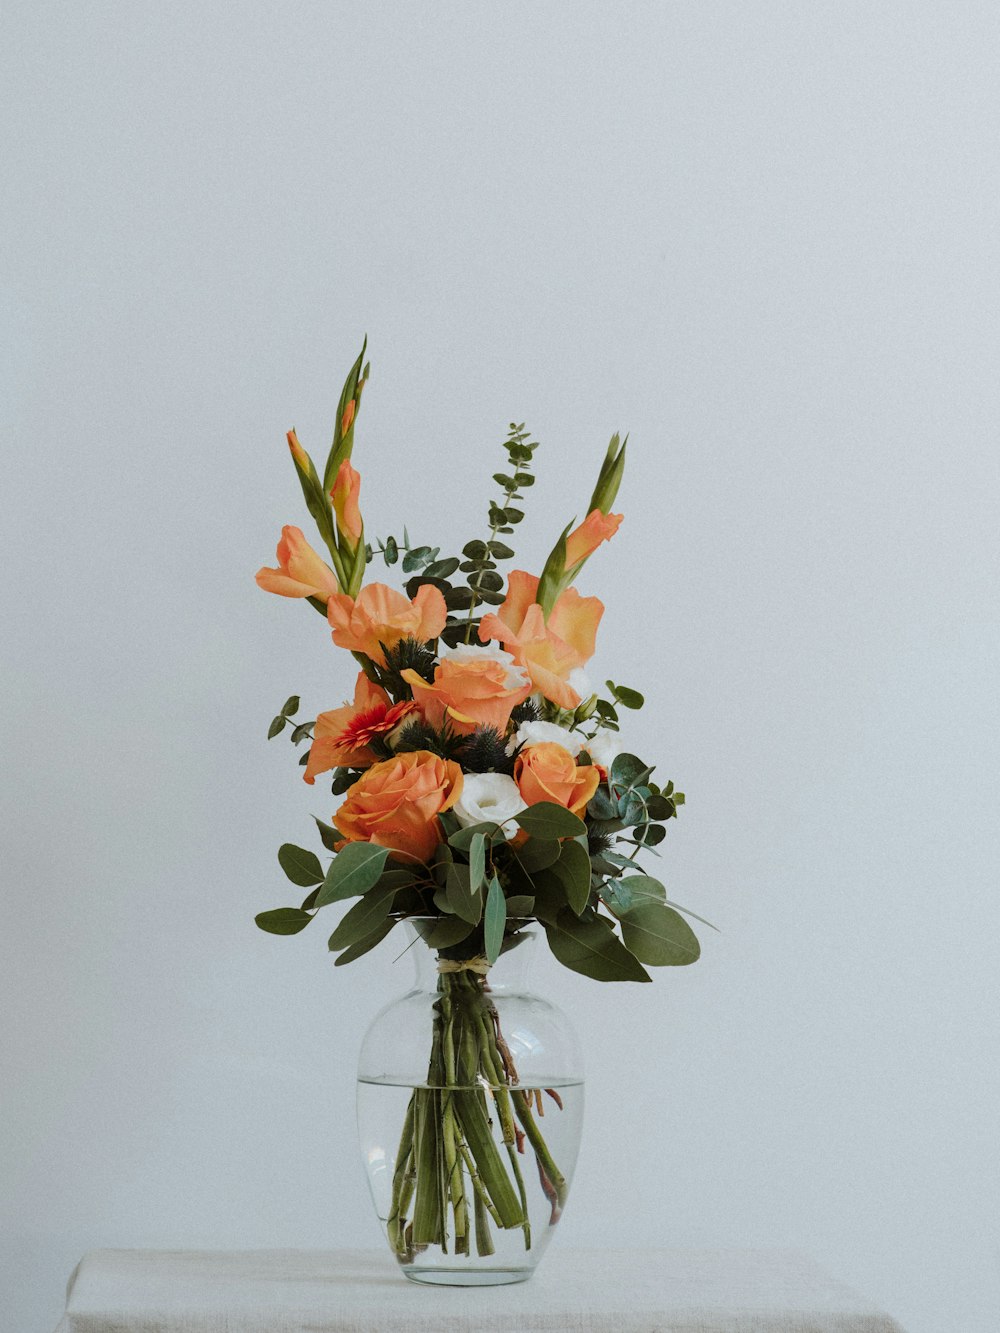 Fleurs d’orange dans un vase en verre transparent